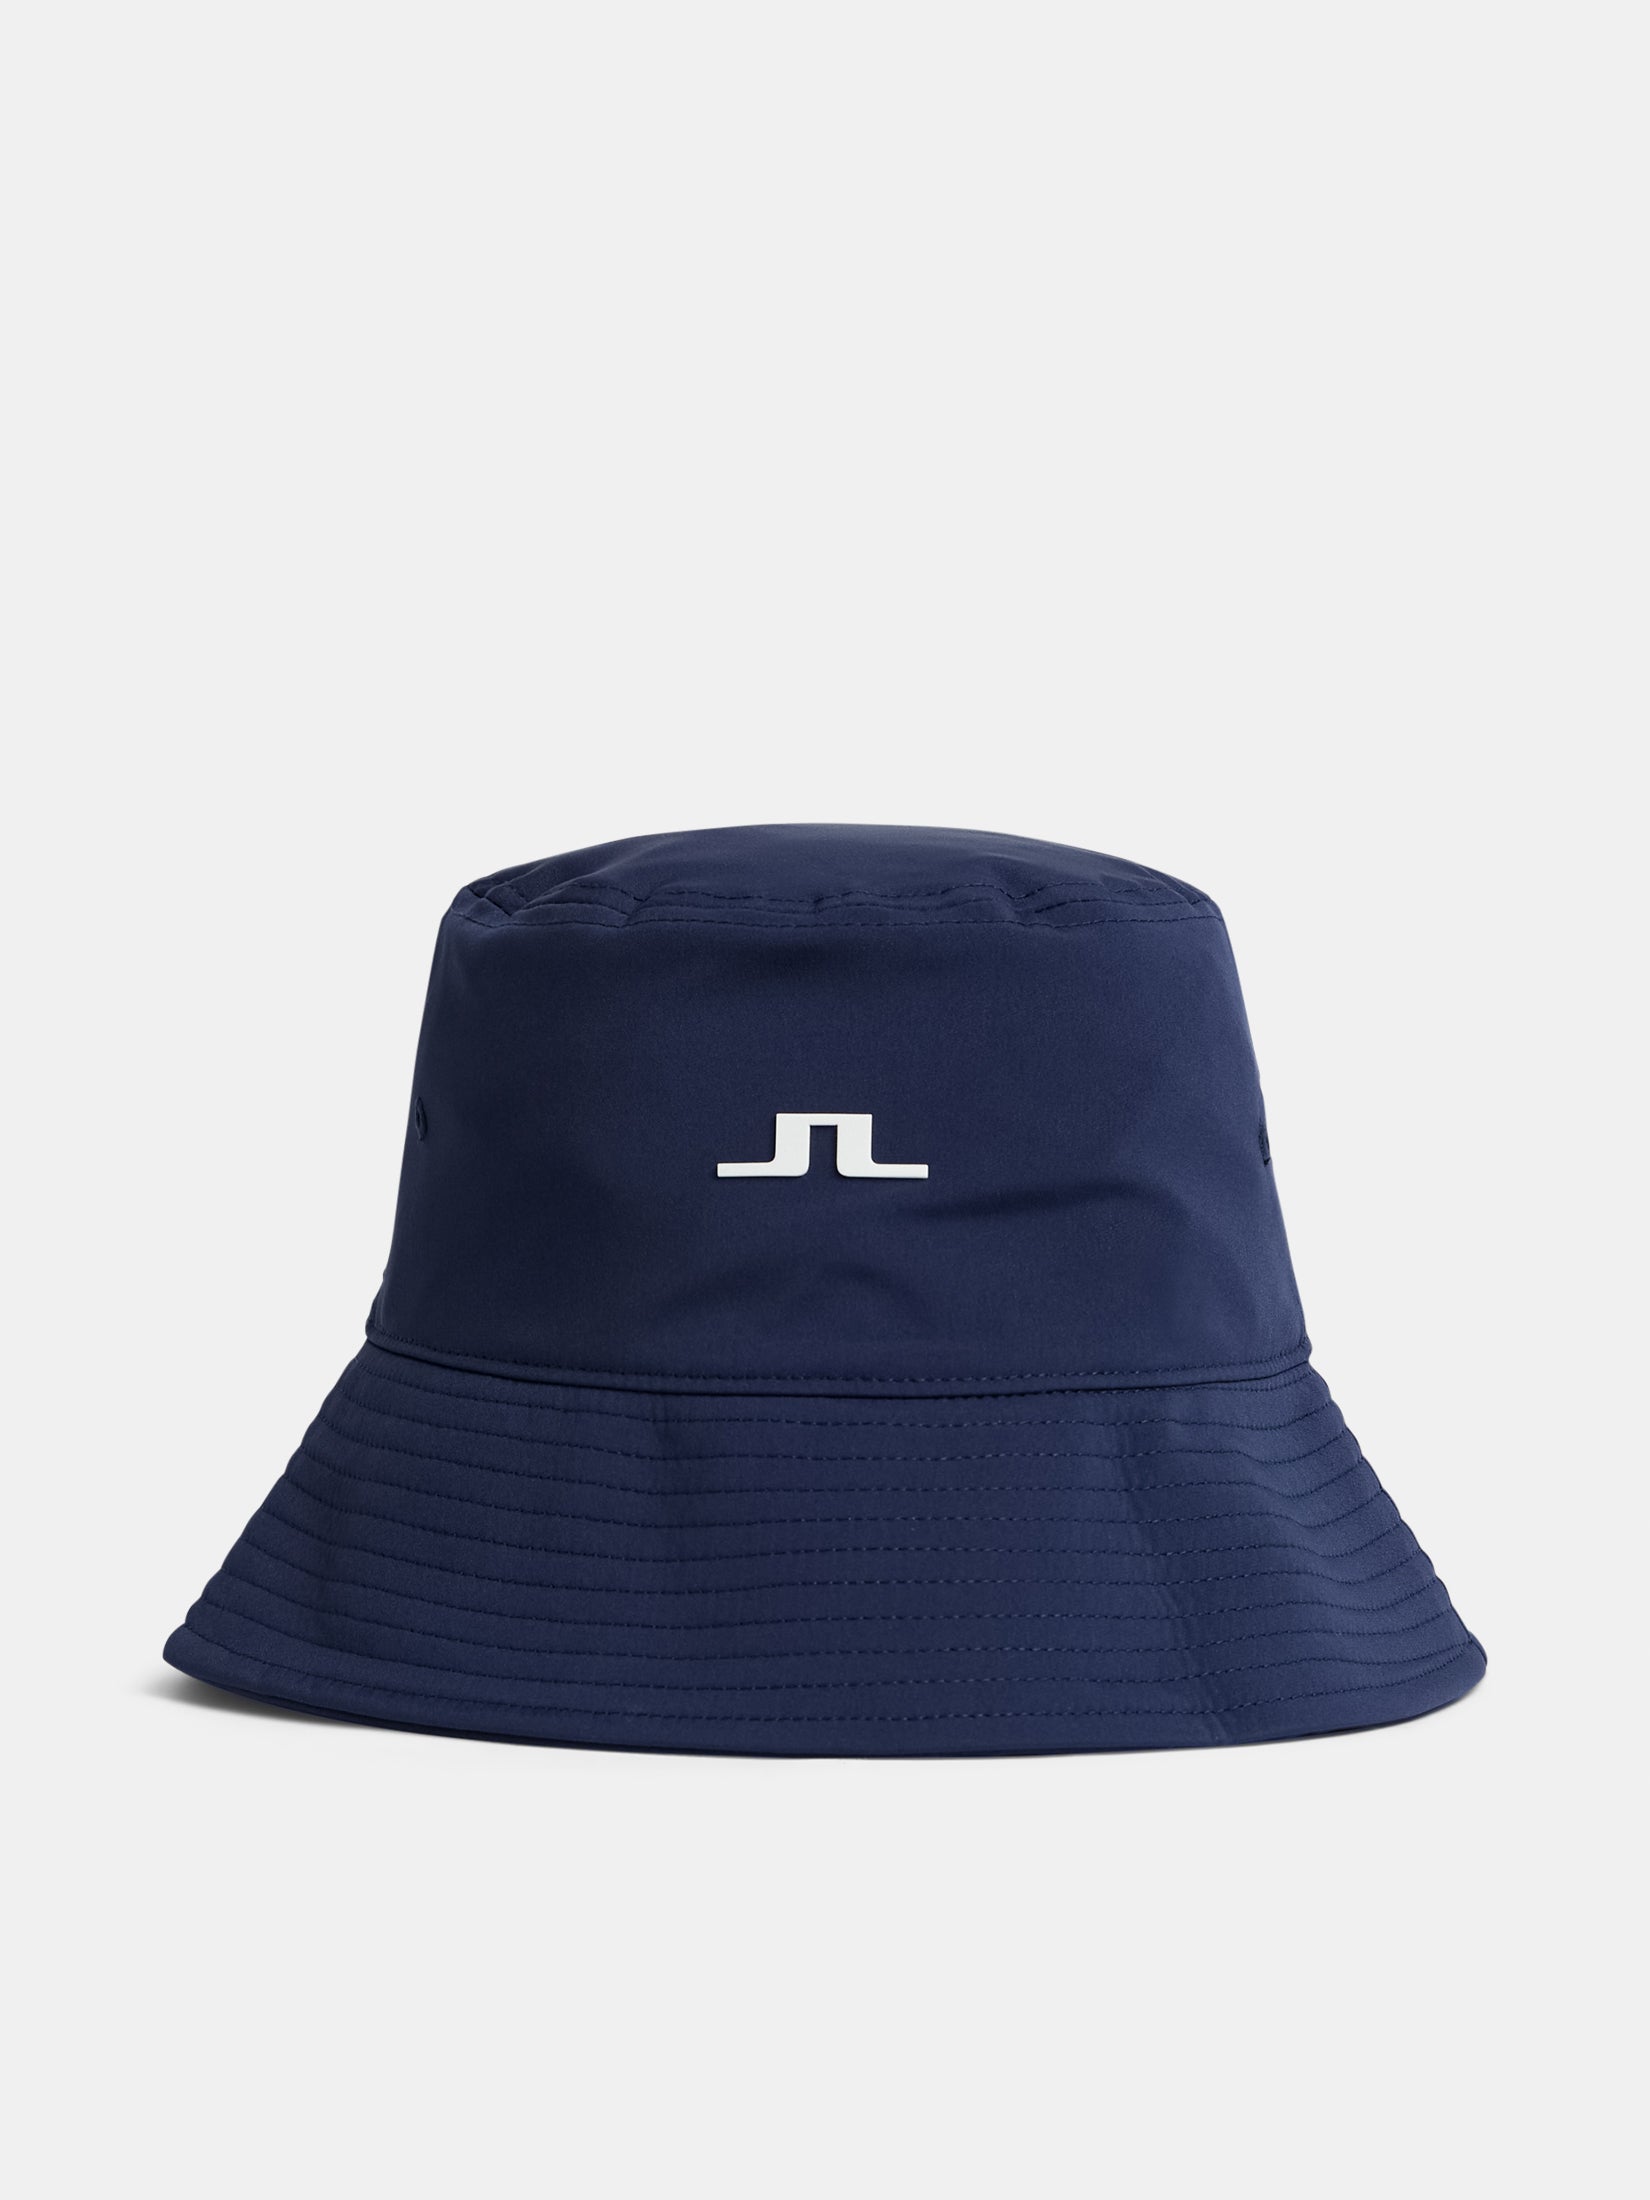 제이린드버그 J.LINDEBERG Siri Bucket Hat